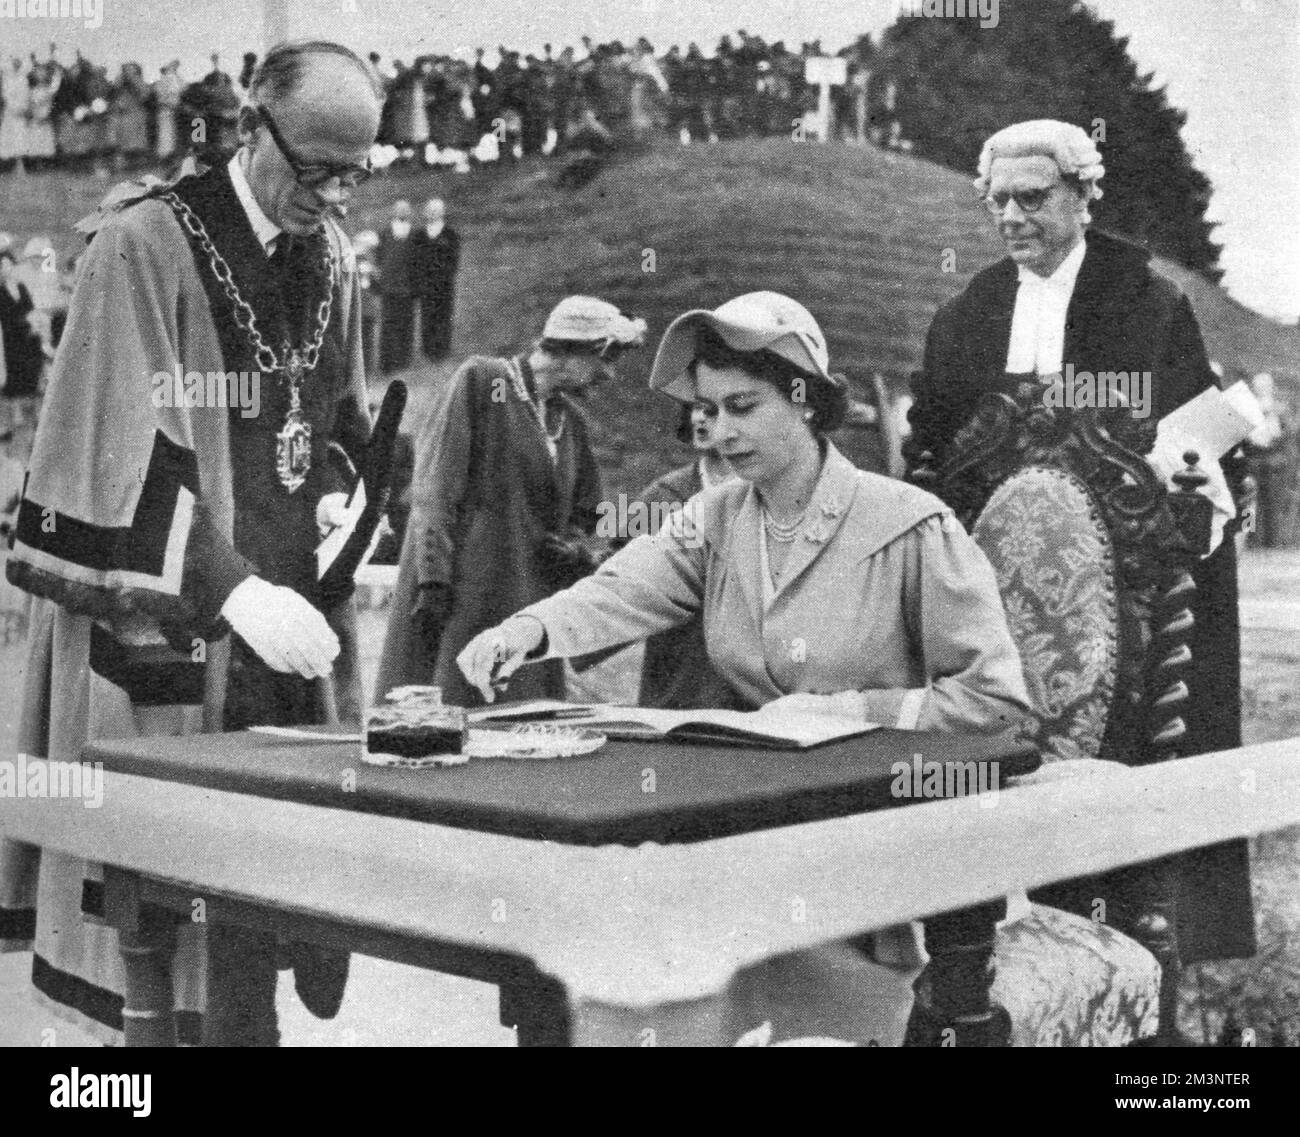 Königin Elisabeth II. Unterzeichnet das berühmte Besucherbuch bei Maumbury Rings in Dorchester, Dorset, einem jungsteinzeitlichen Rundbauwerk, das später als römisches Amphitheater umgebaut wurde. Sie hat gerade eine Adresse vom Bürgermeister von Dorchester erhalten. Datum: 3.. Juli 1952 Stockfoto